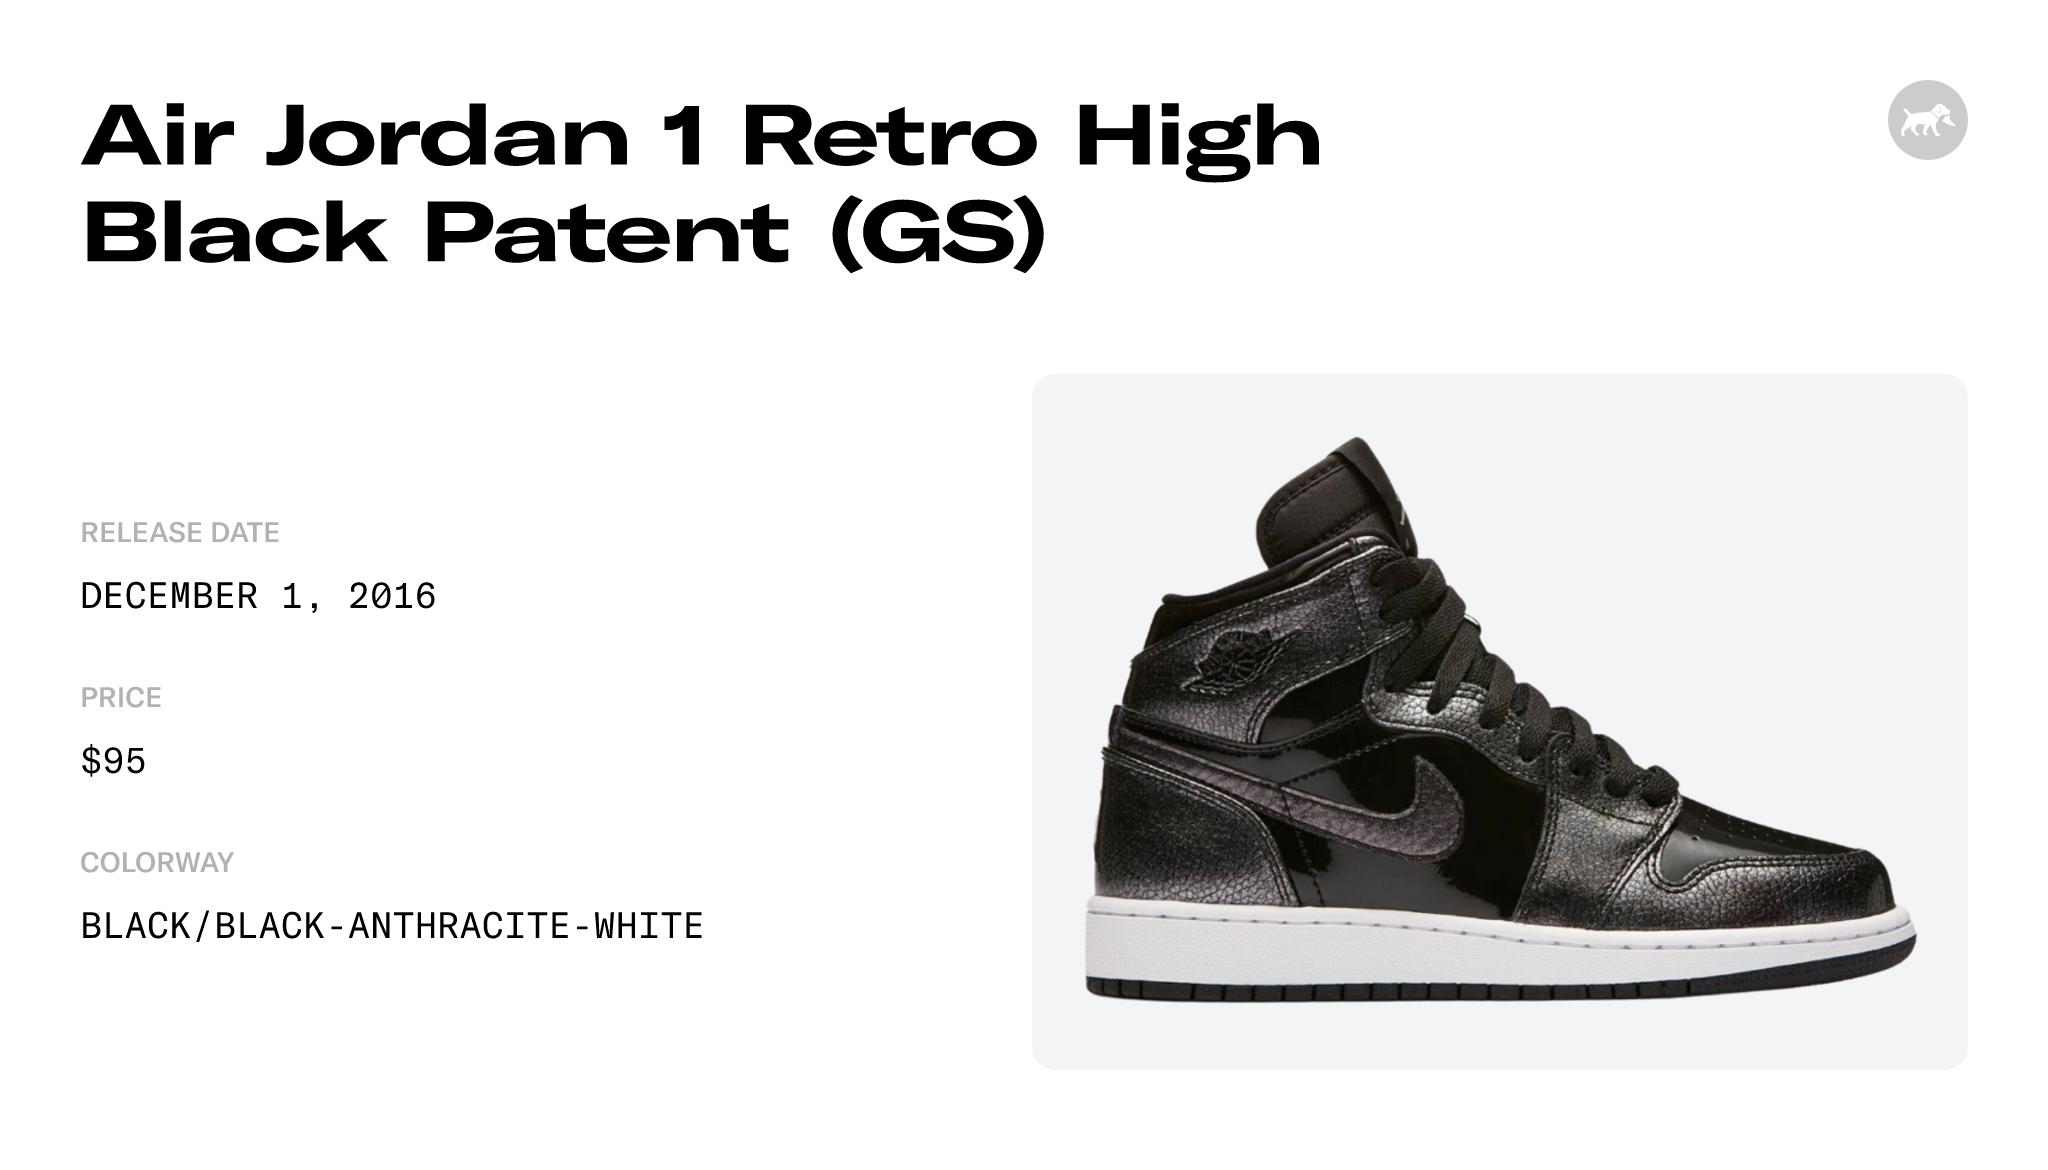 Air Jordan 1 Retro High Black Patent (GS) - 705300-017 Raffles and Release  Date